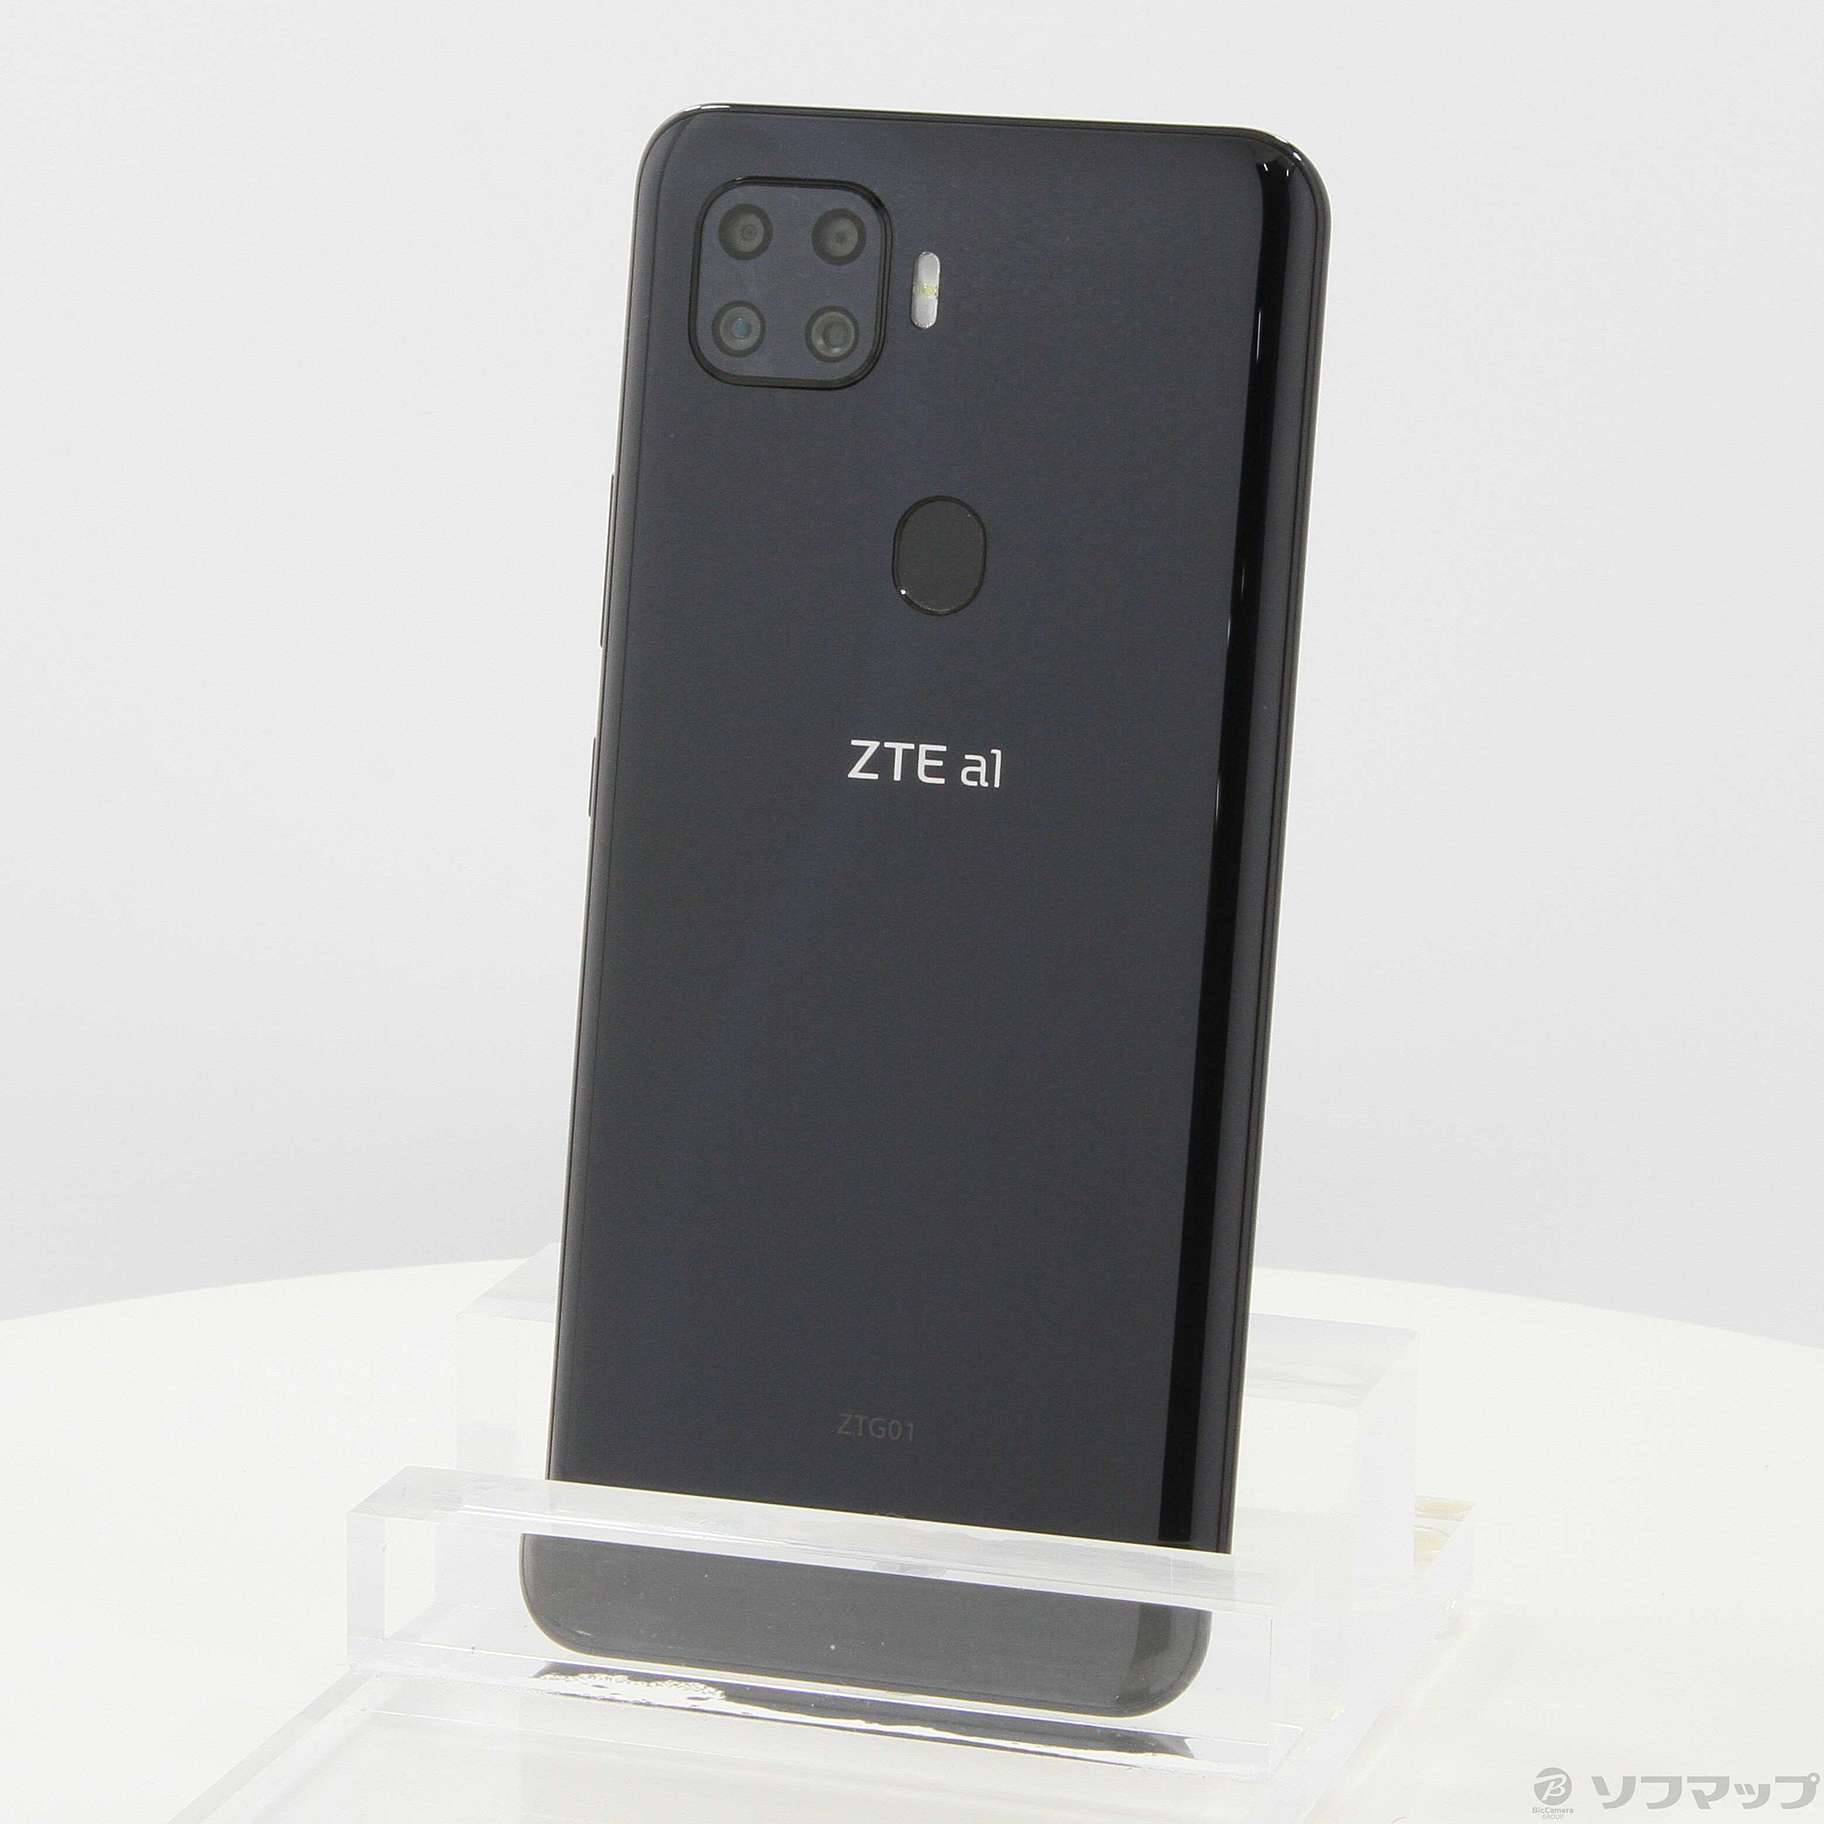 中古】ZTE a1 128GB ブラック ZTG01 auロック解除SIMフリー